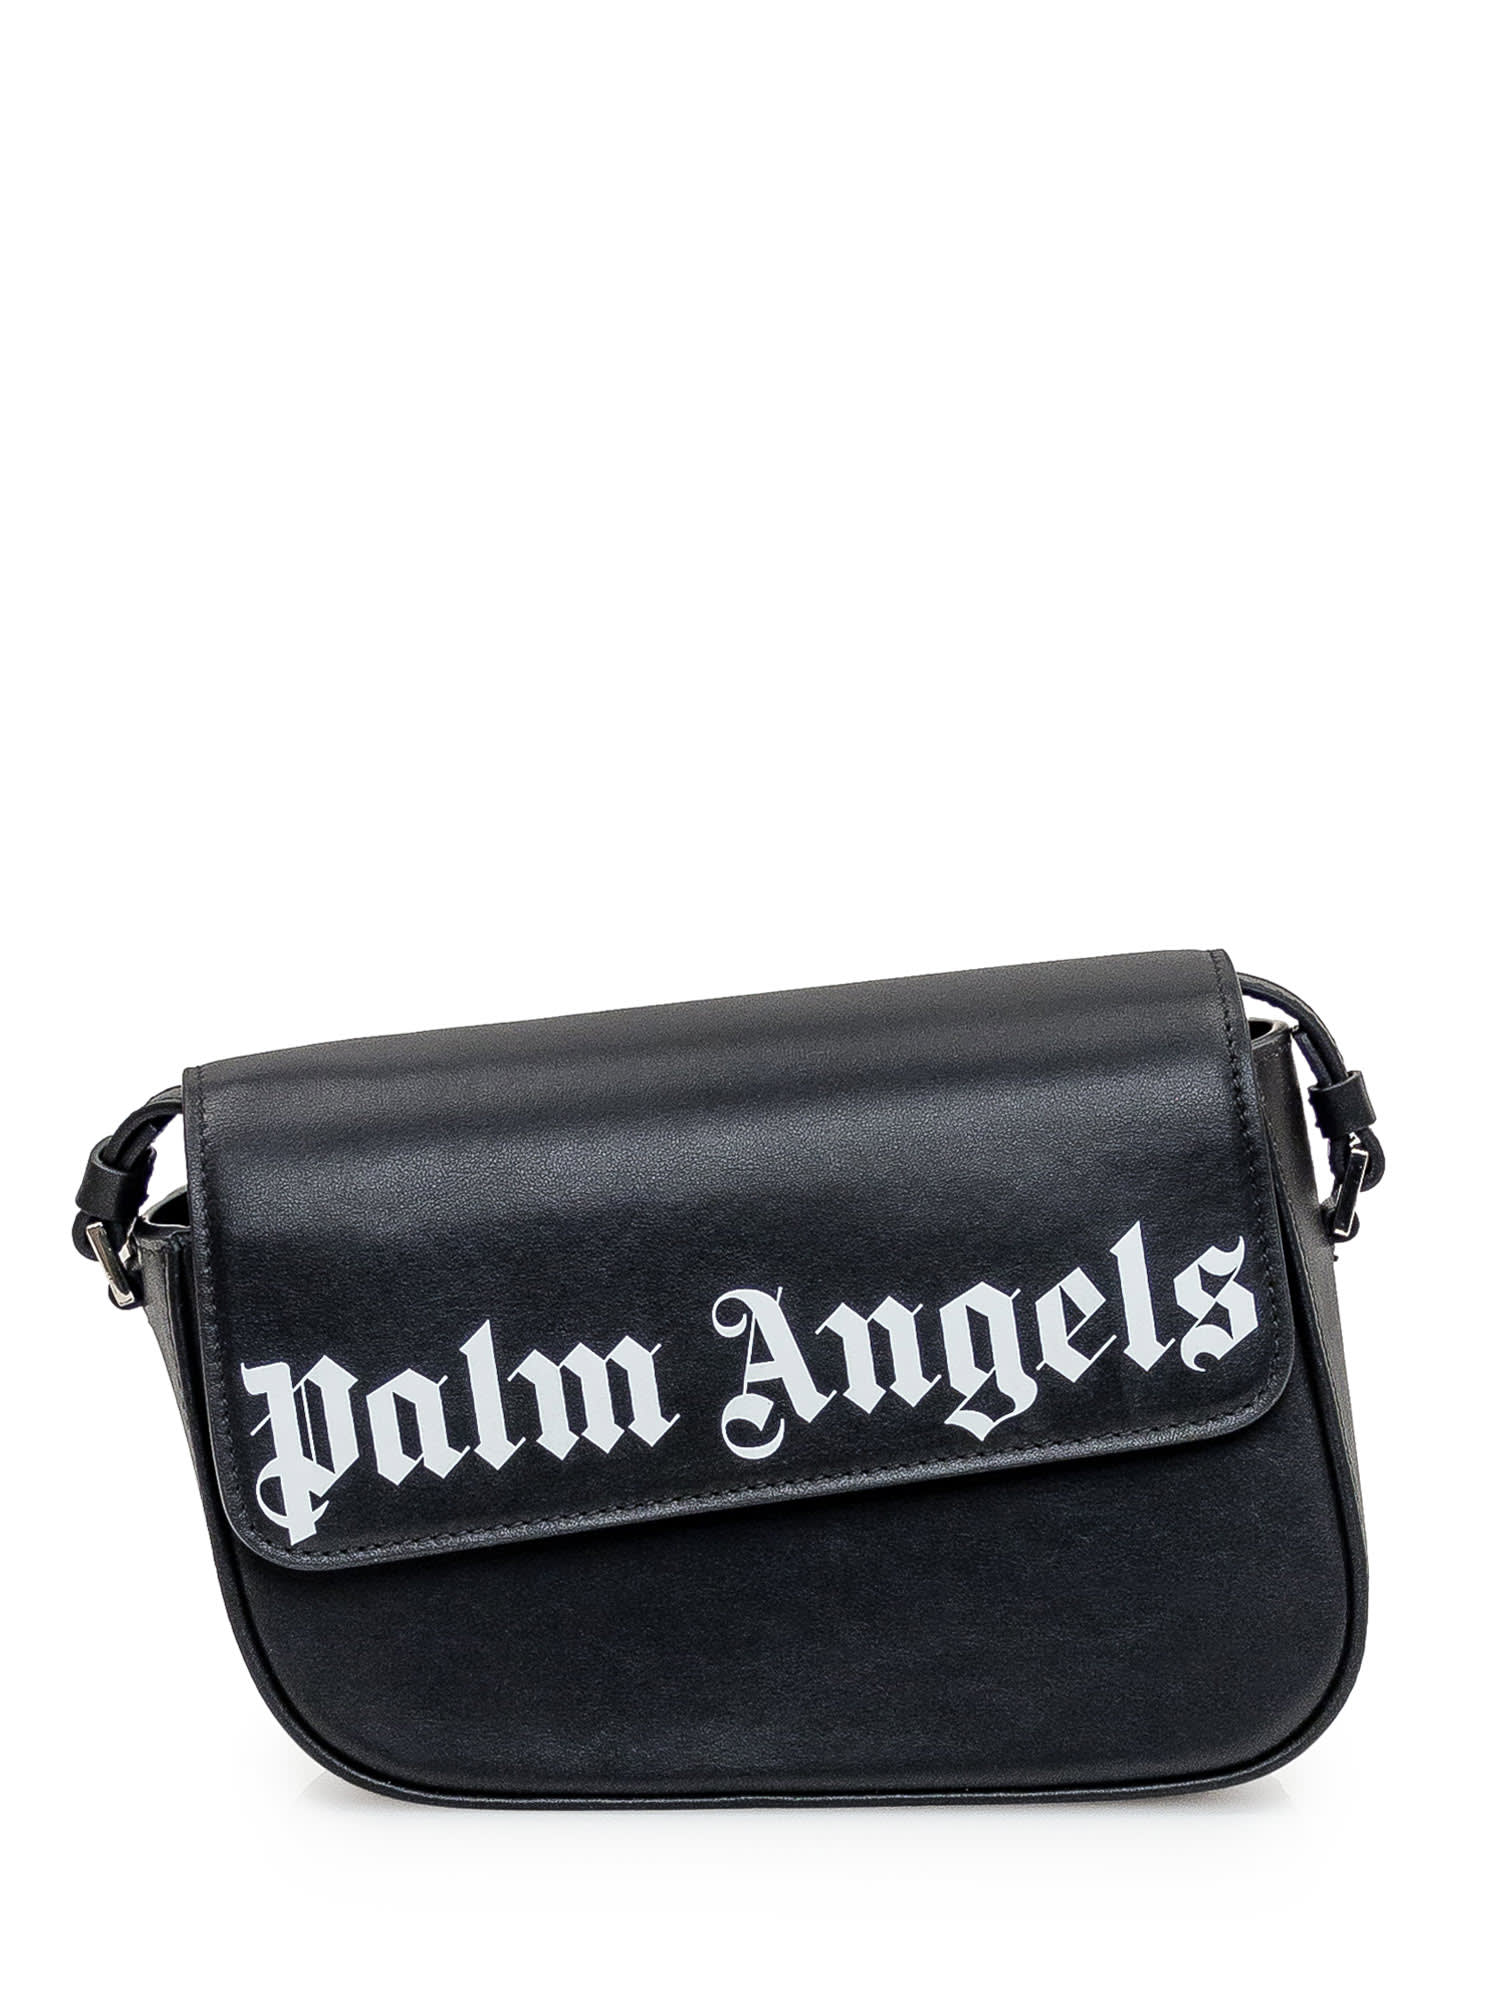 Palm Angels Crash Black Leather Bag